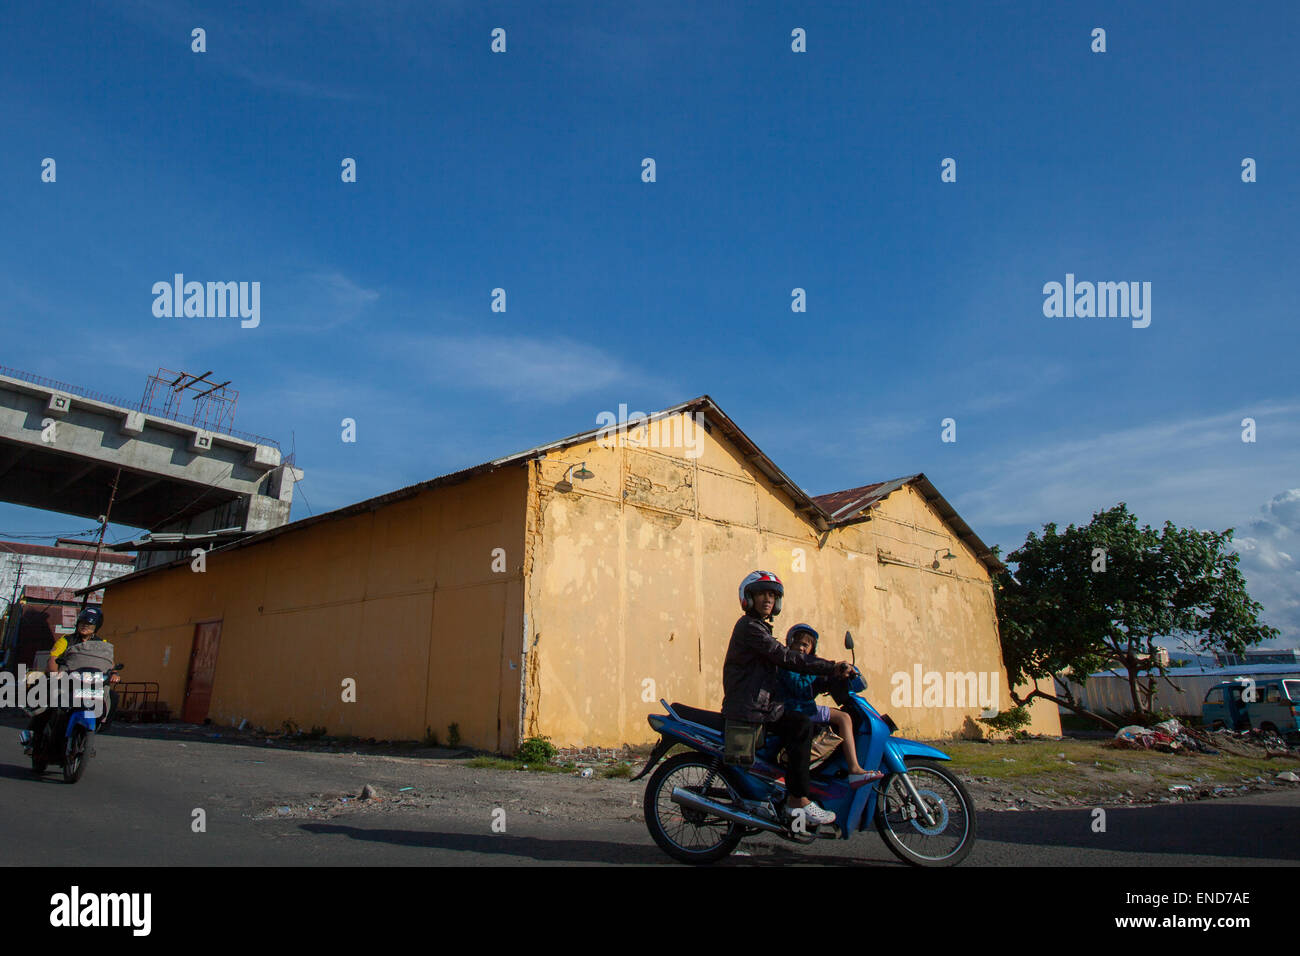 Les automobilistes sont photographiés dans un arrière-plan d'un entrepôt, dans la zone côtière de Manado, au nord de Sulawesi, en Indonésie. Banque D'Images